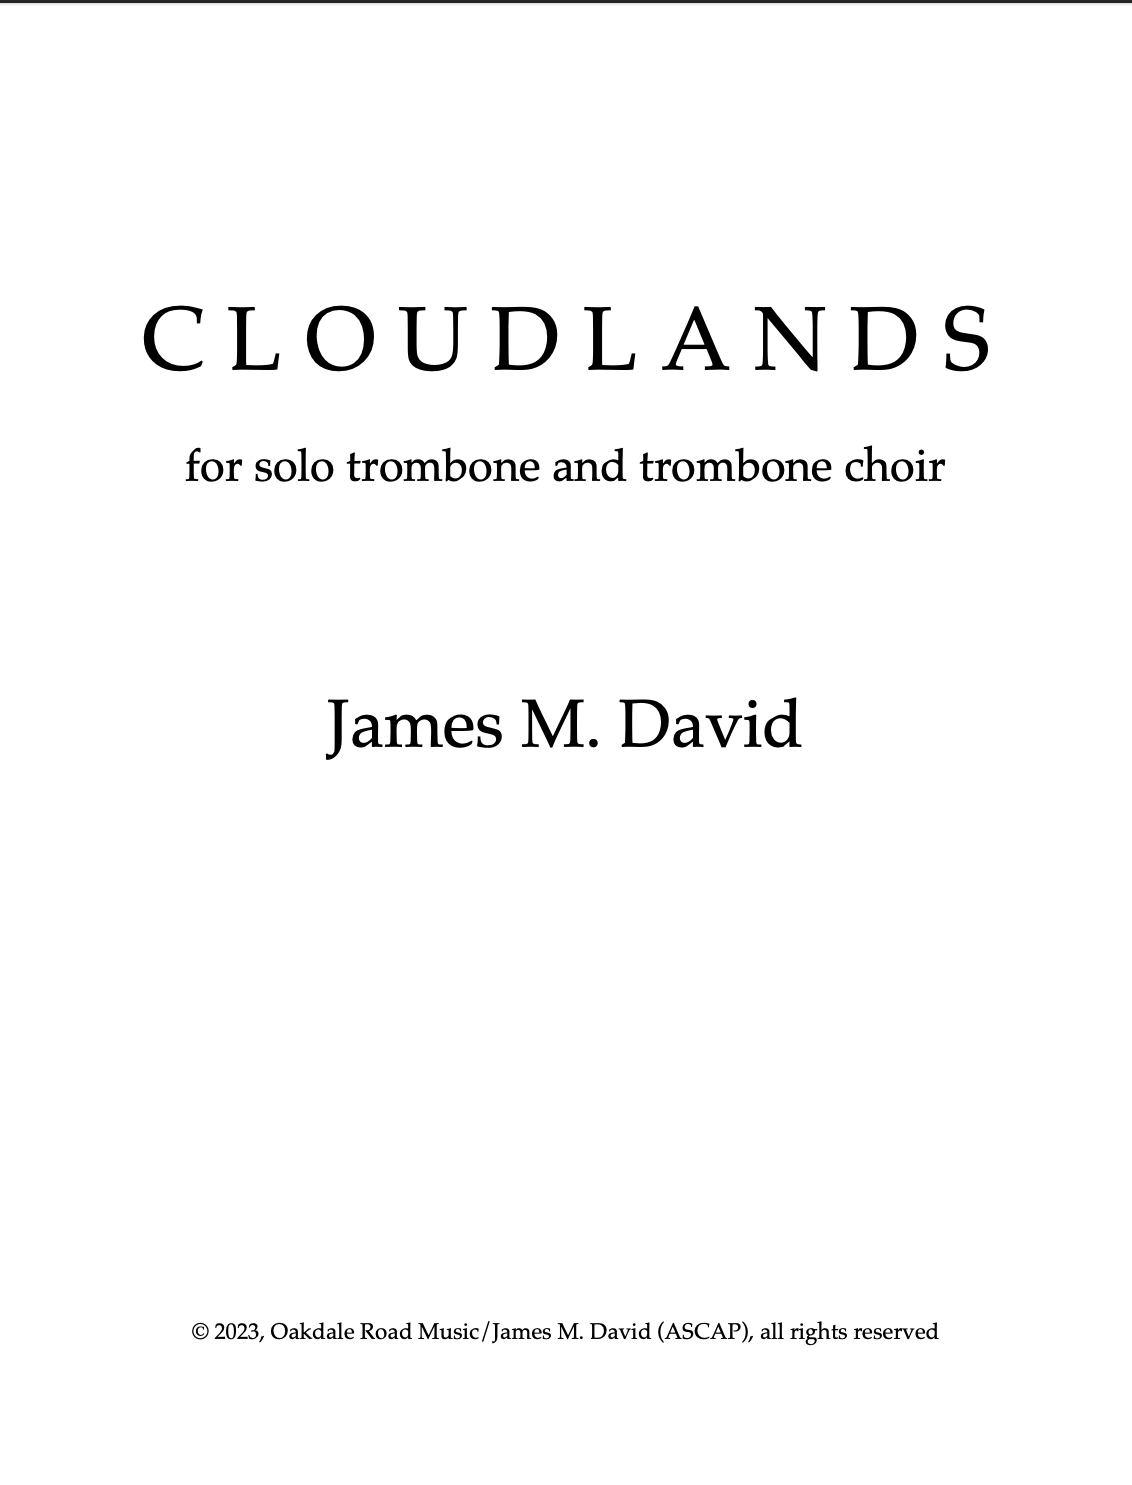 Cloudlands by James David